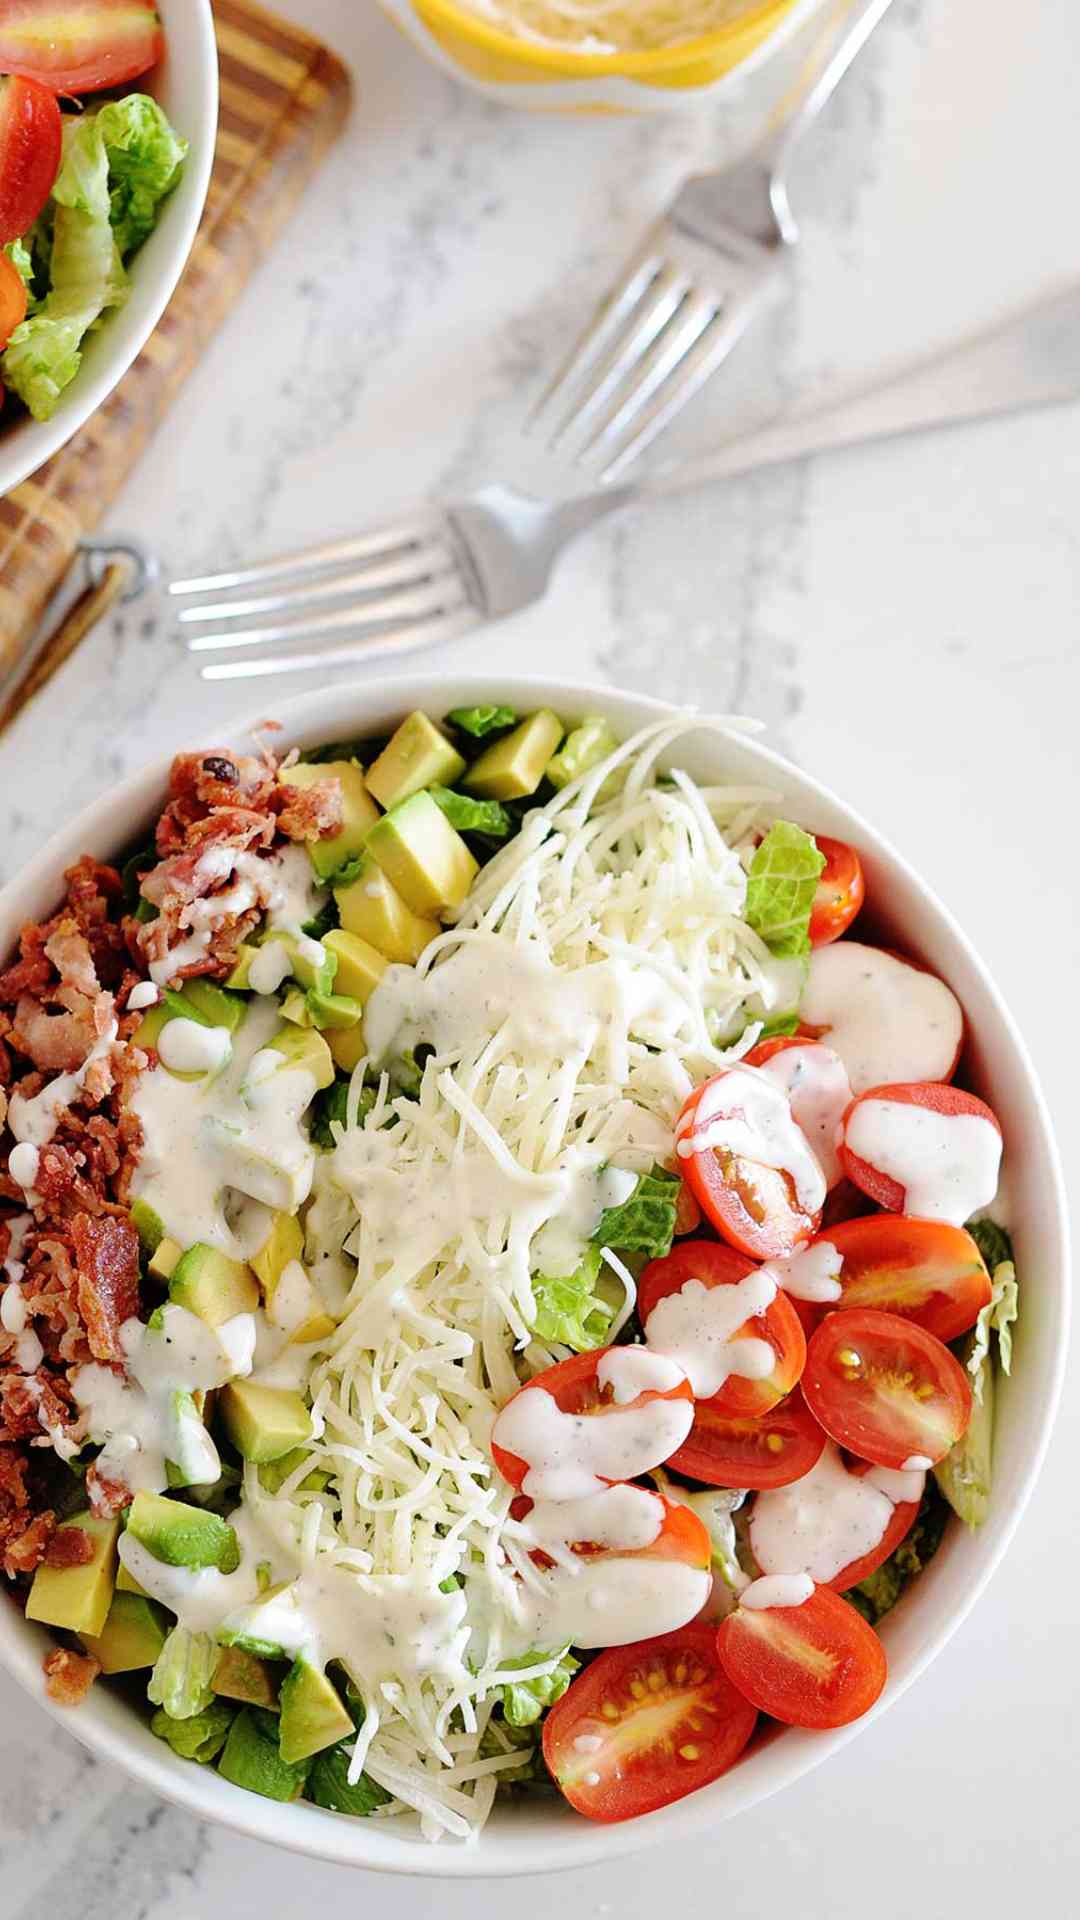 2. Quick and Easy Blt Salad Recipes